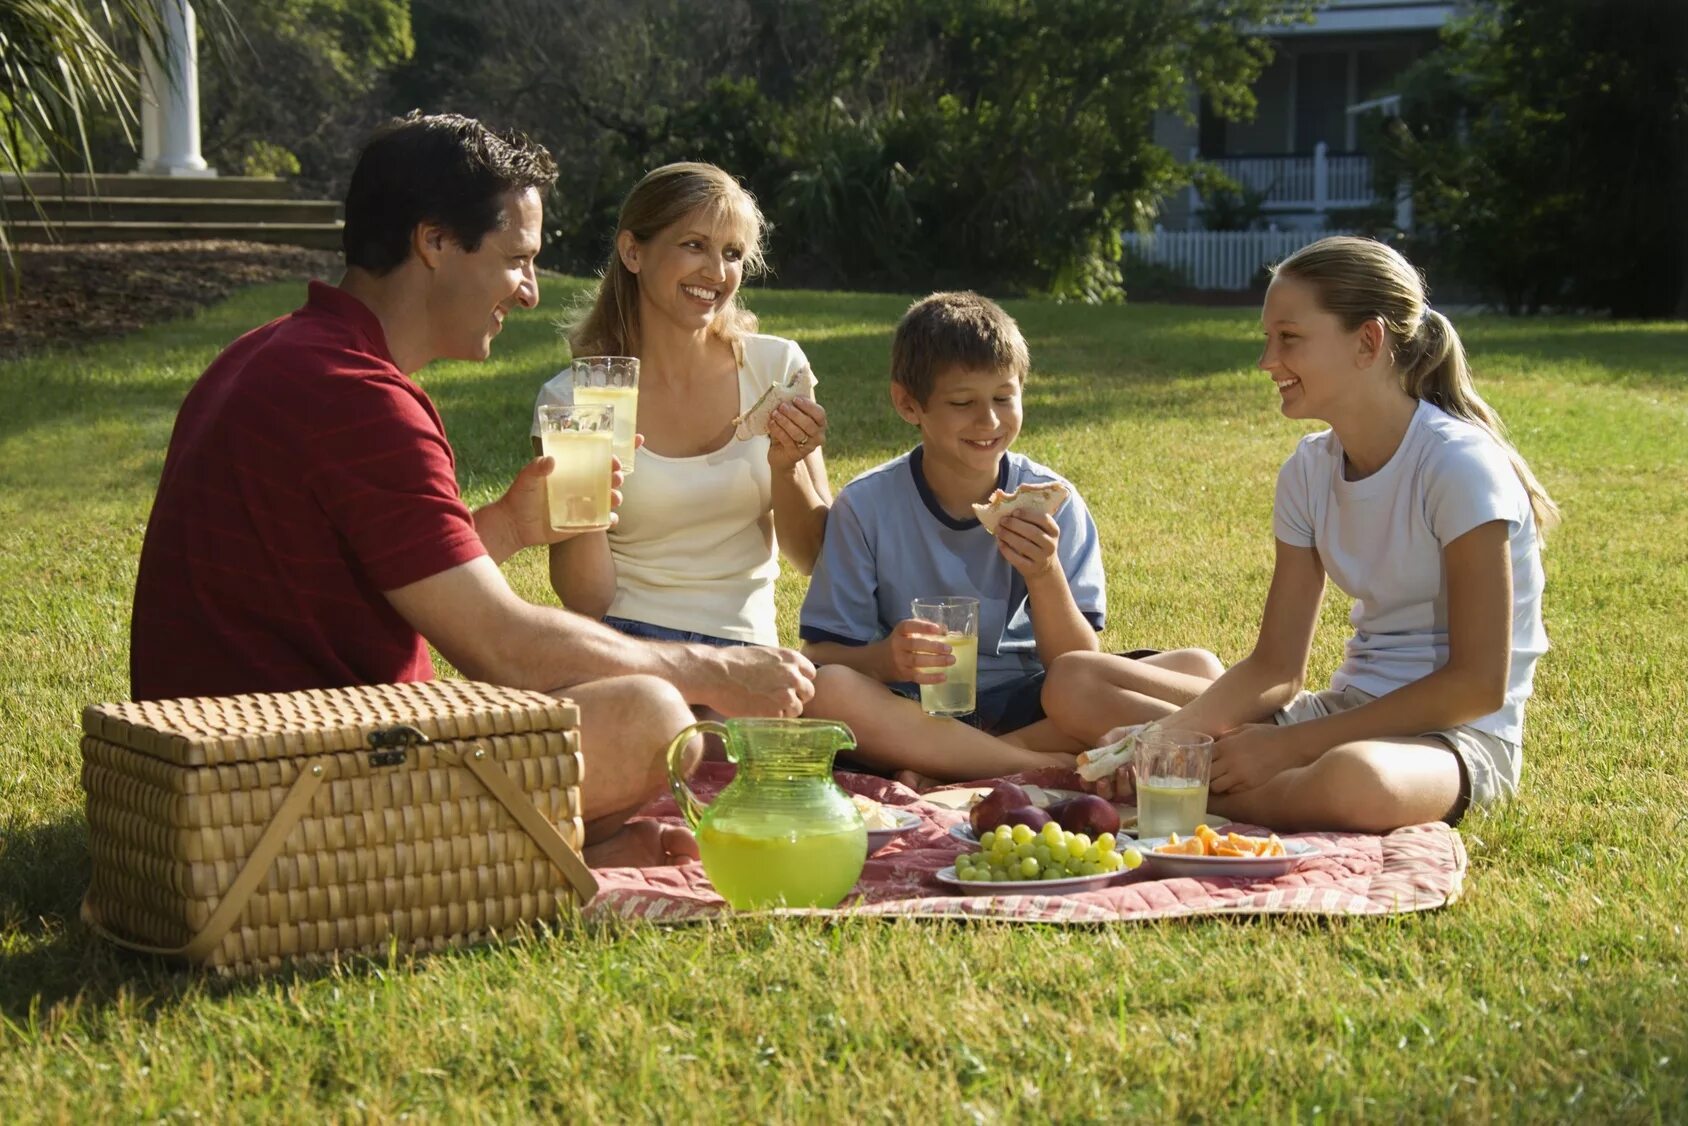 Семья на пикнике. Семейный пикник на природе. Люди на пикнике. Люди отдыхают на природе. Как мы с друзьями провели выходной день